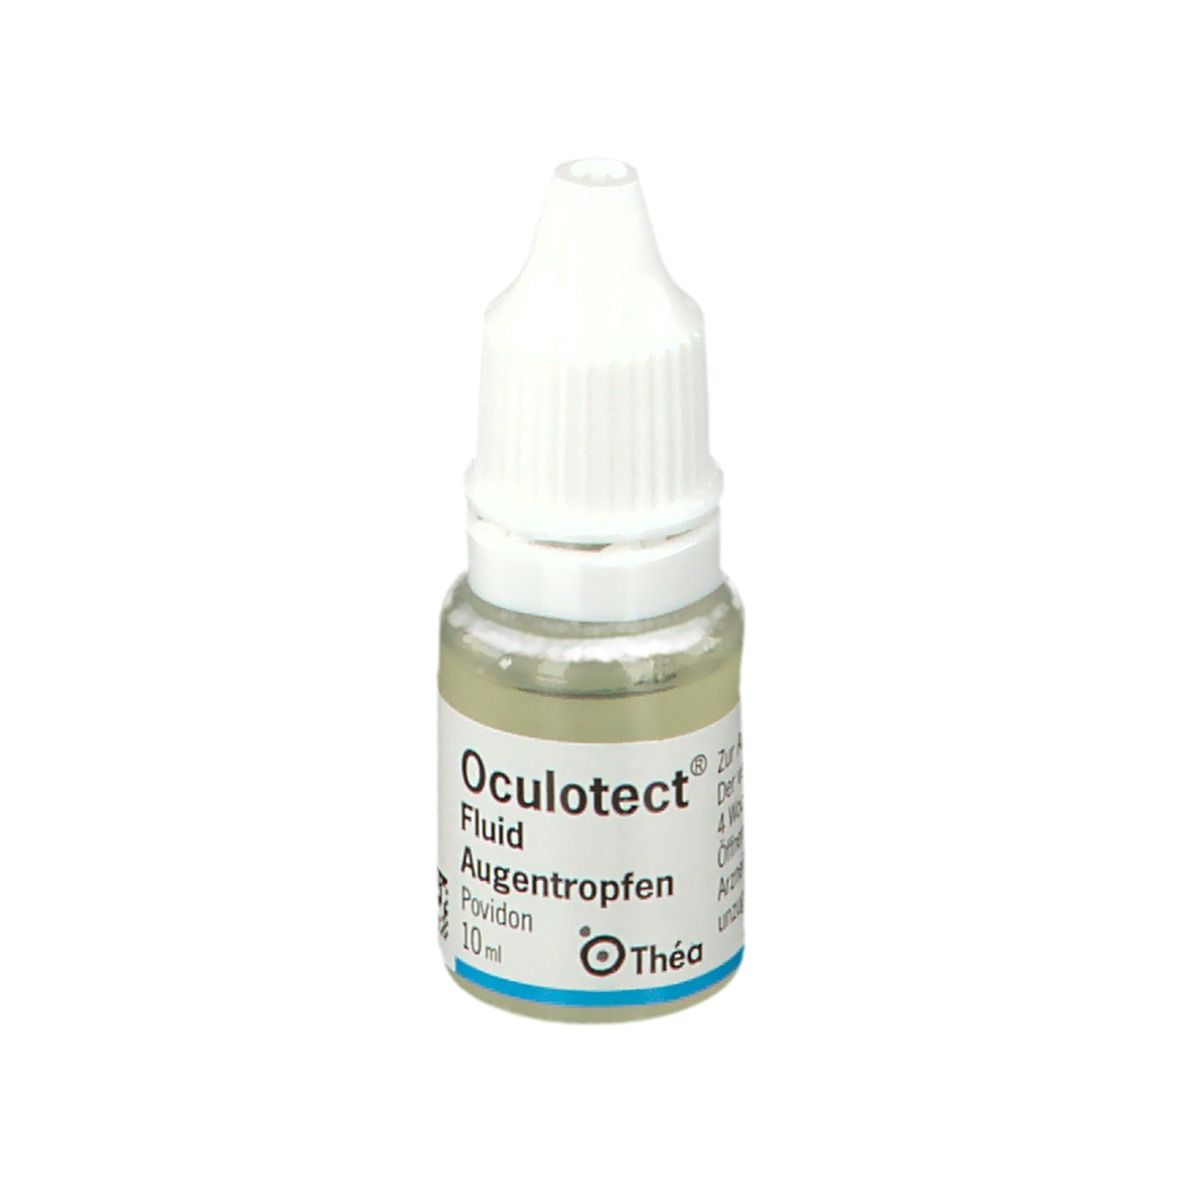 Oculotect® Fluid